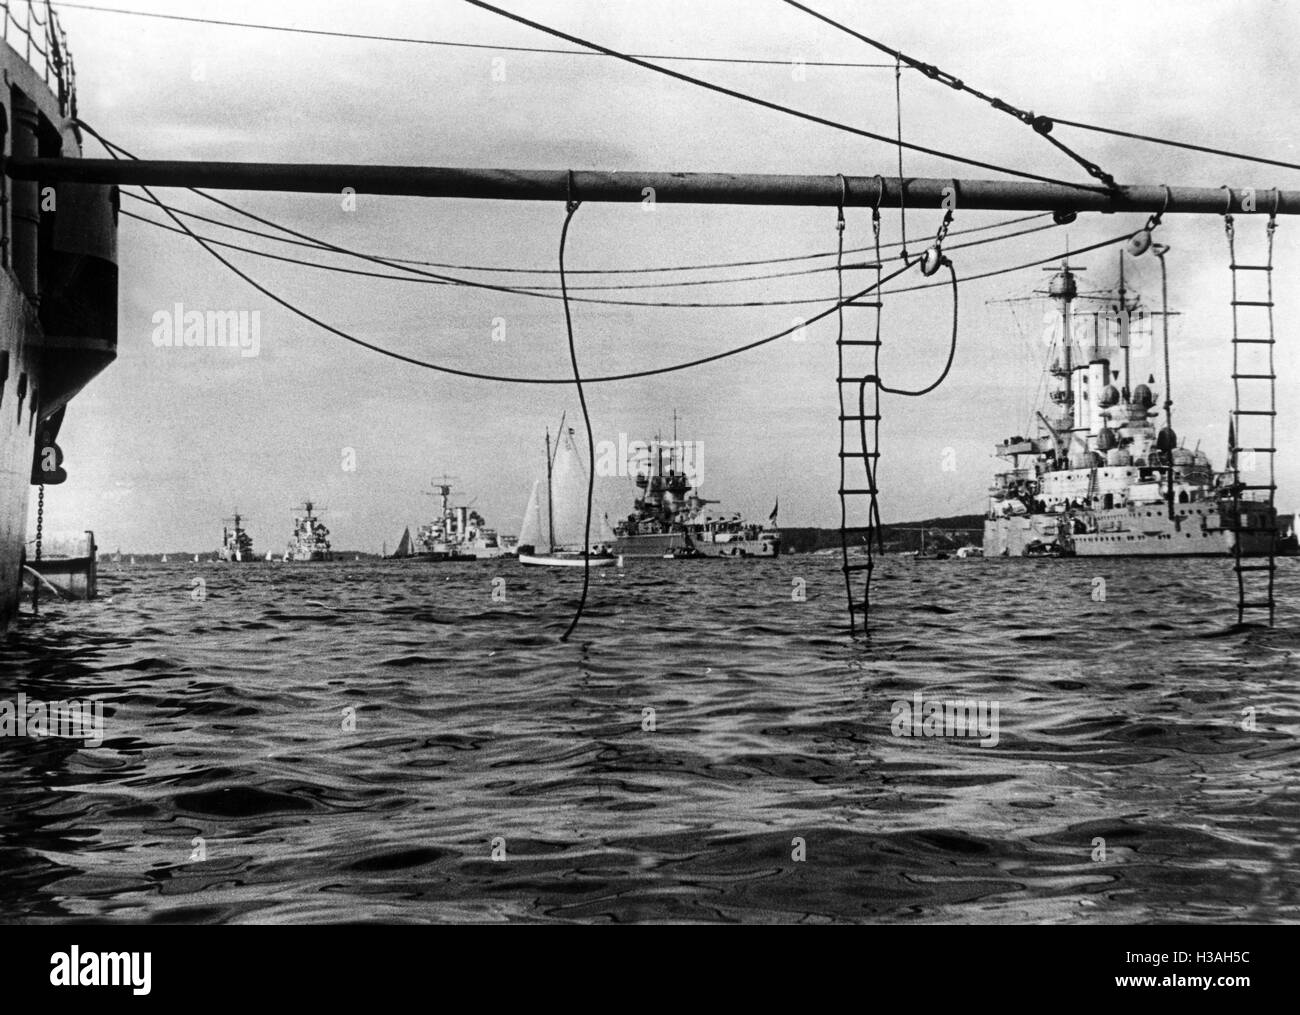 Revue de la flotte après des exercices d'artillerie de la Kriegsmarine, 1935 Banque D'Images